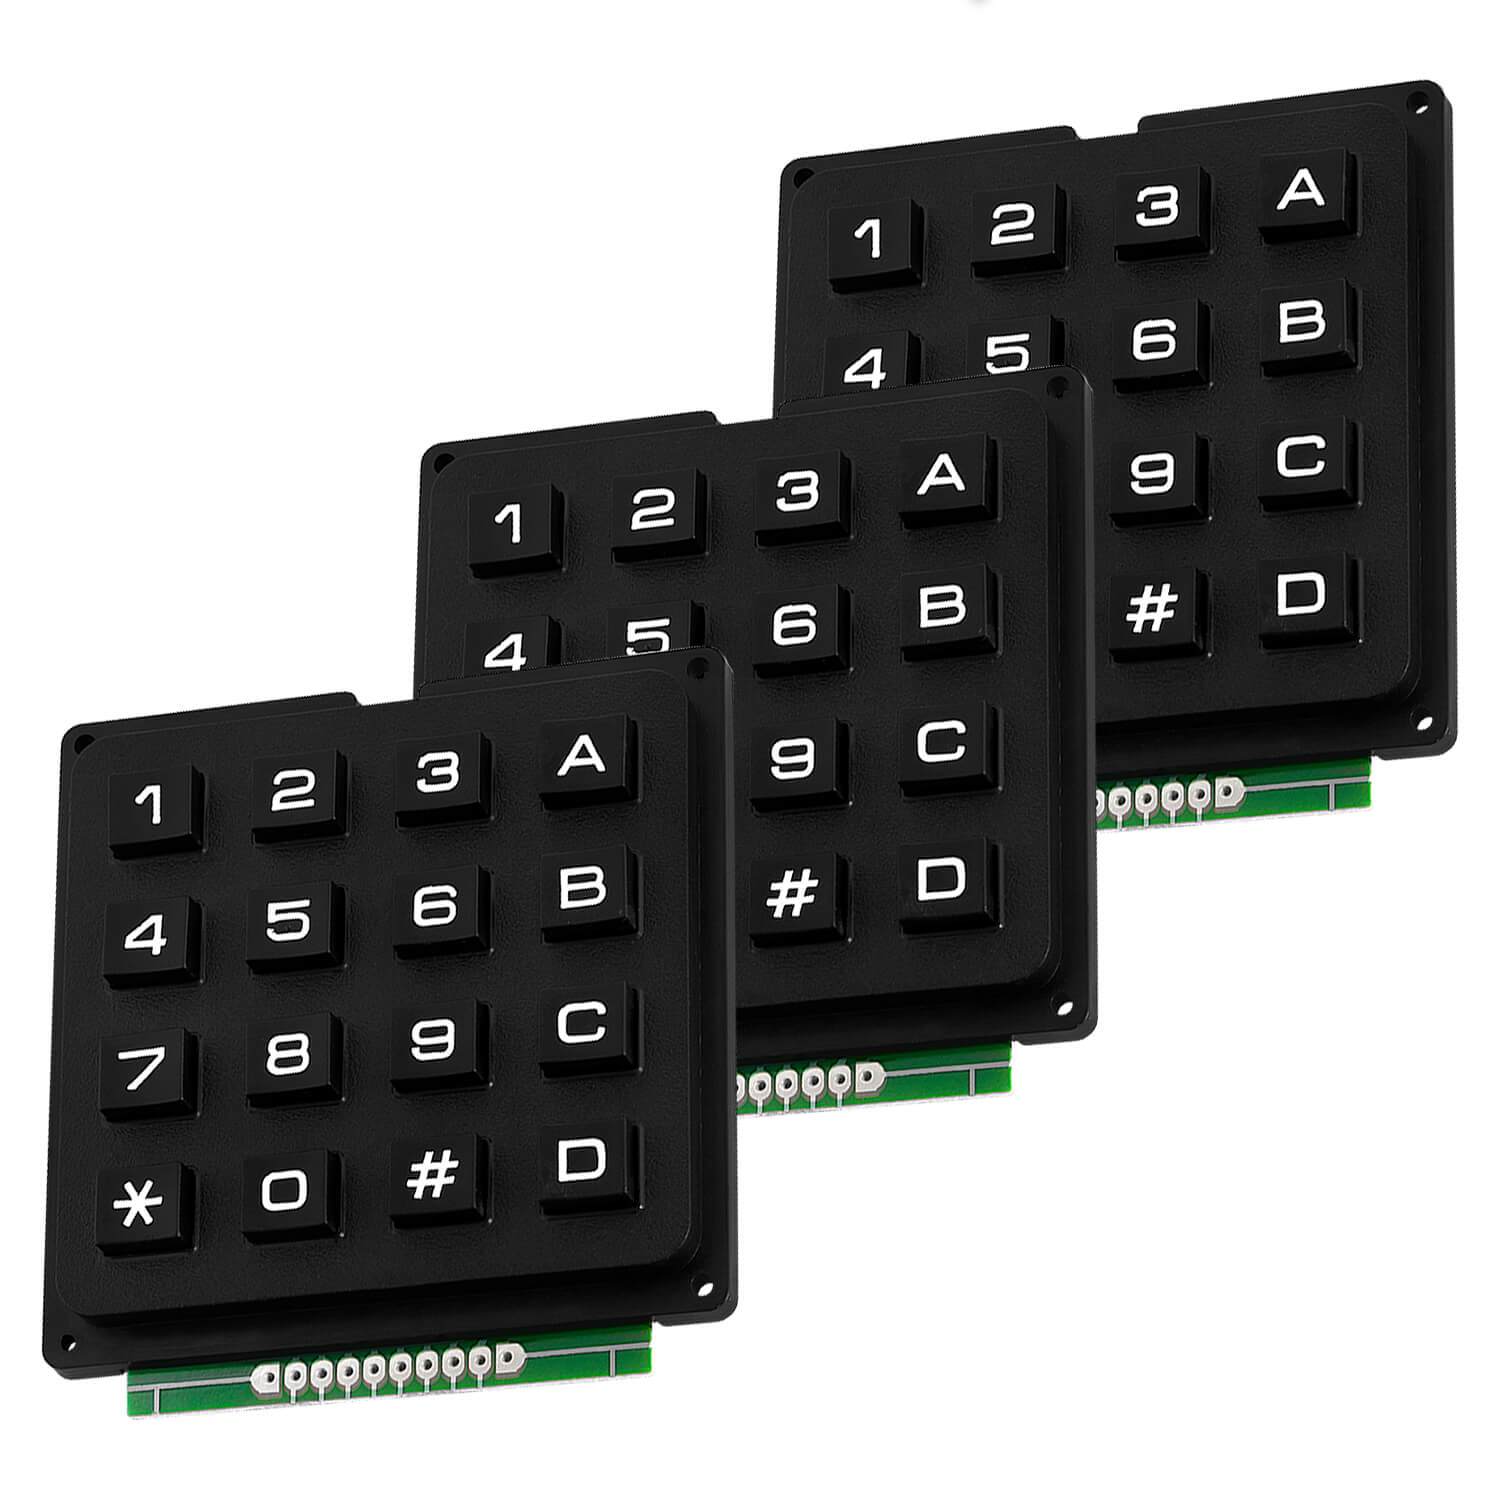 4x4 Matrix Keypad Tastatur kompatibel mit Arduino und Raspberry Pi